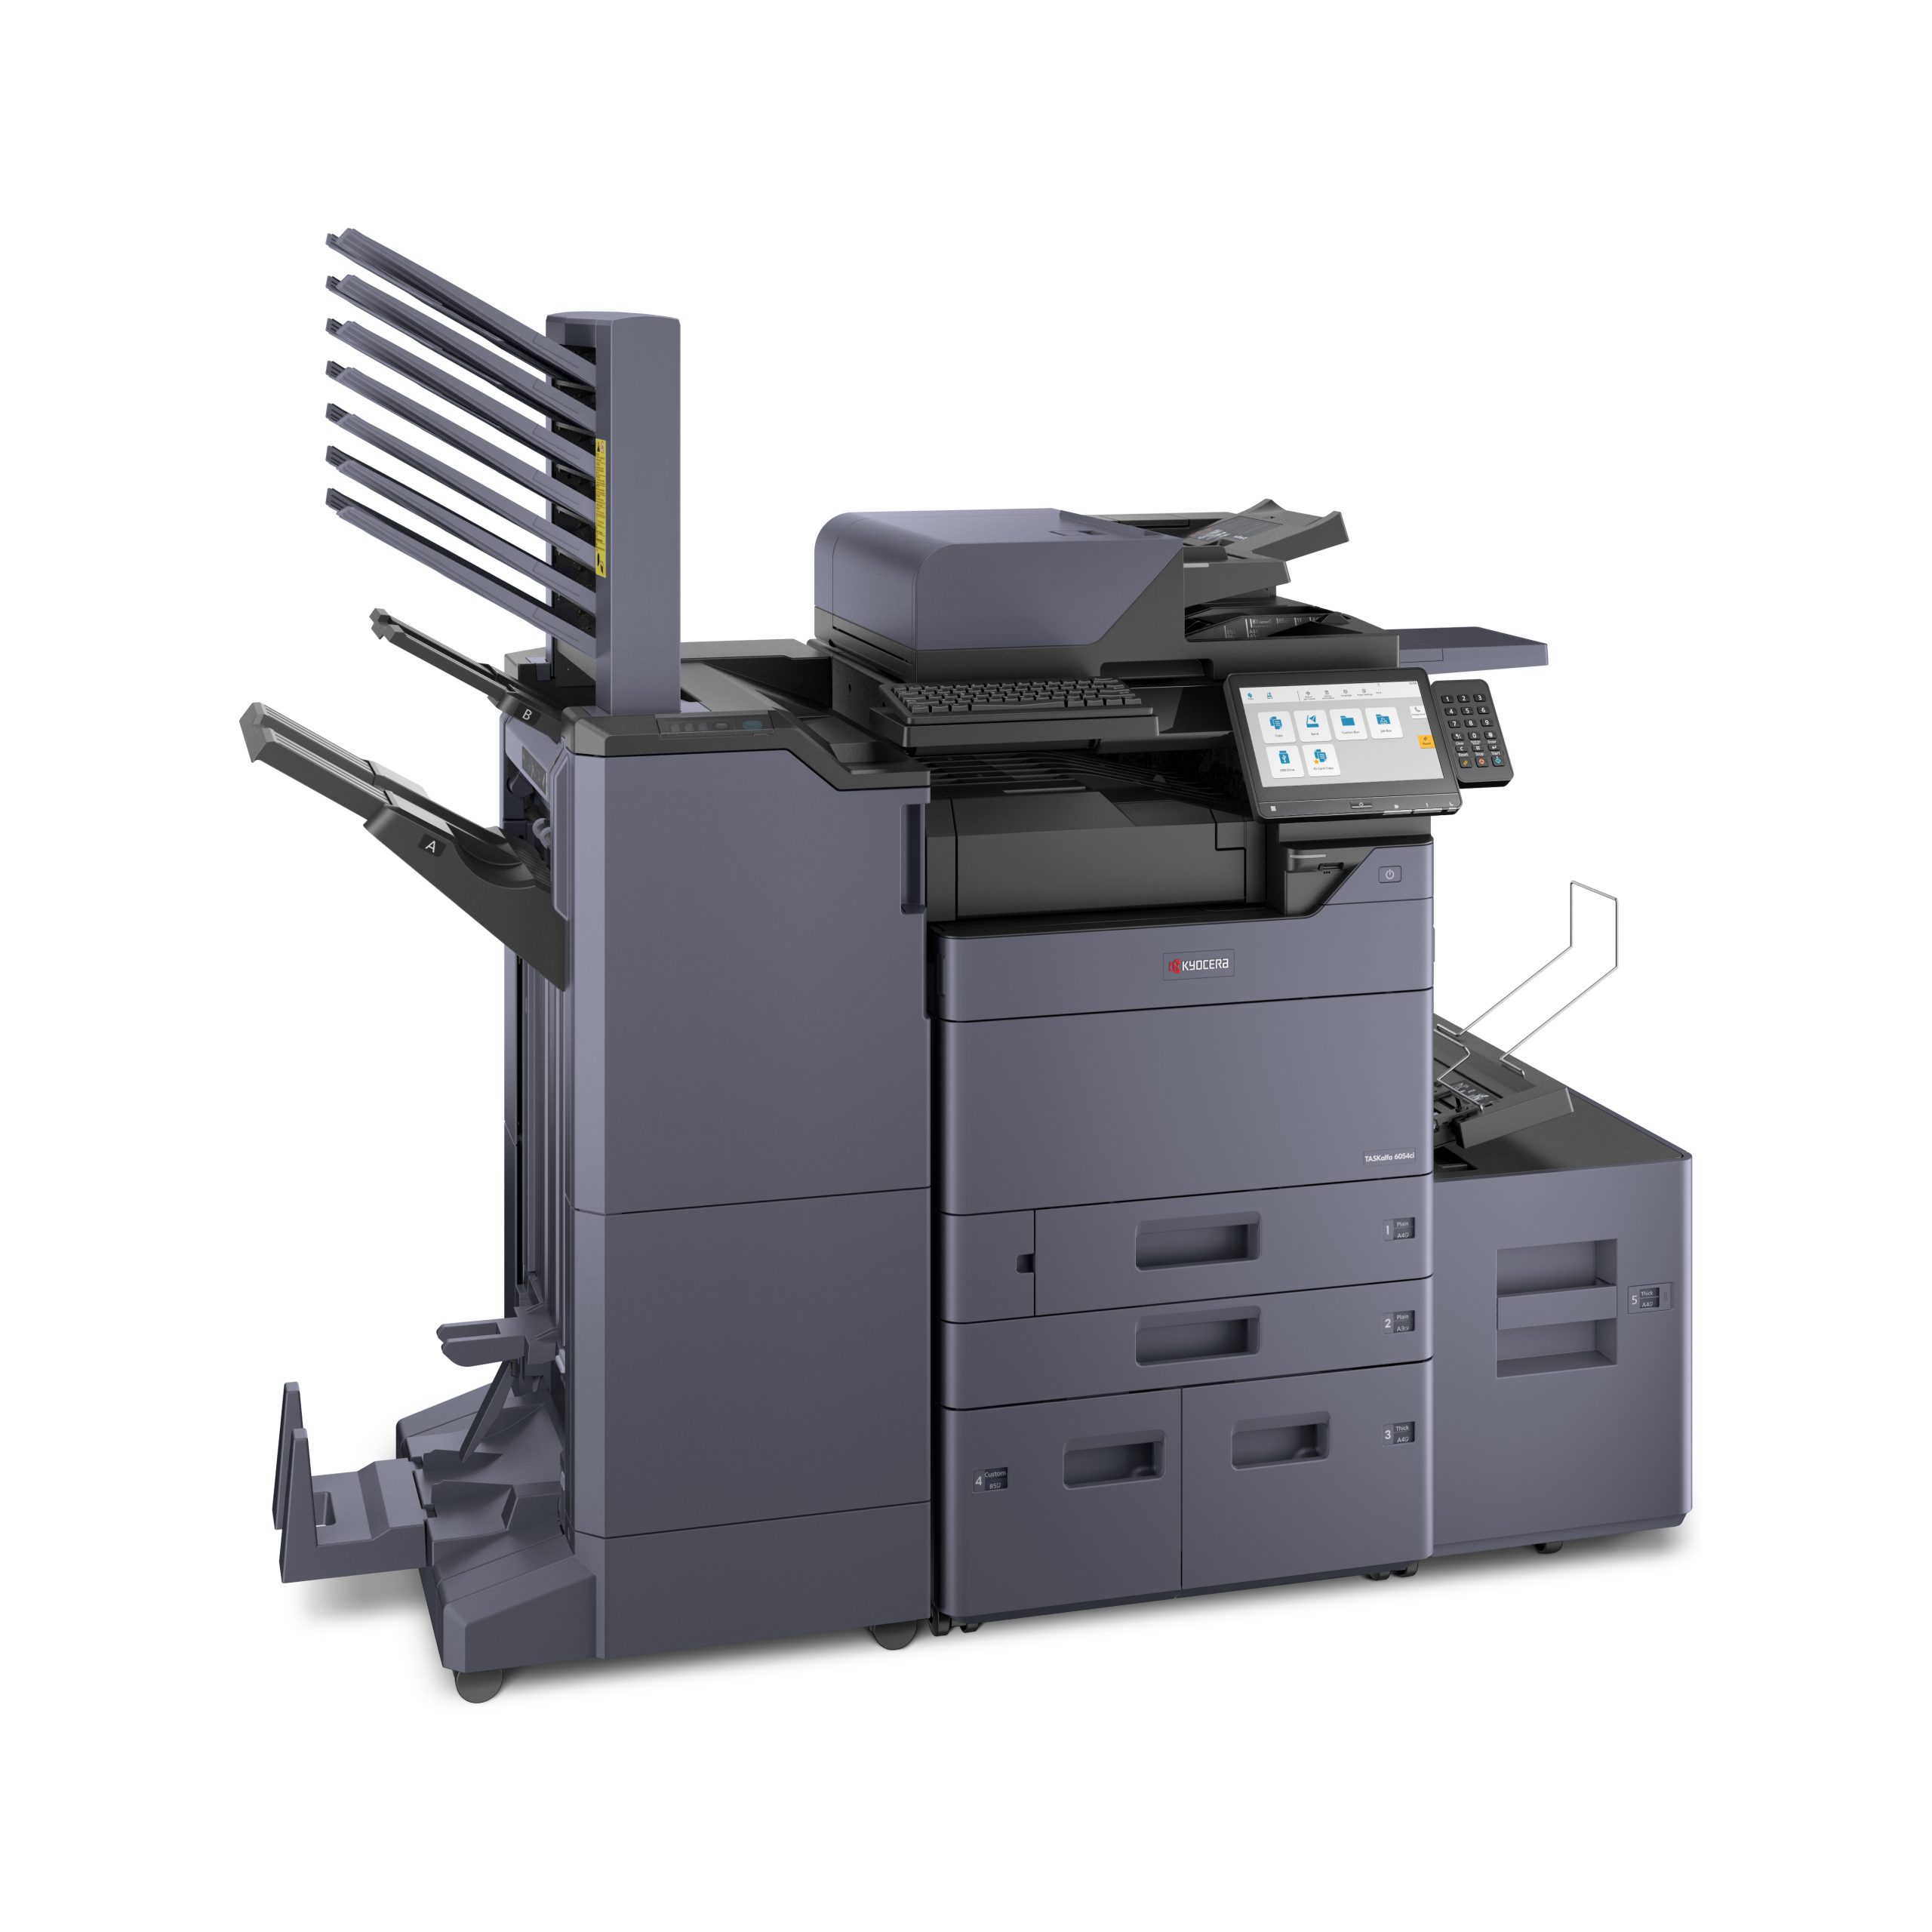 Kyocera Color Scanner Copier Printer